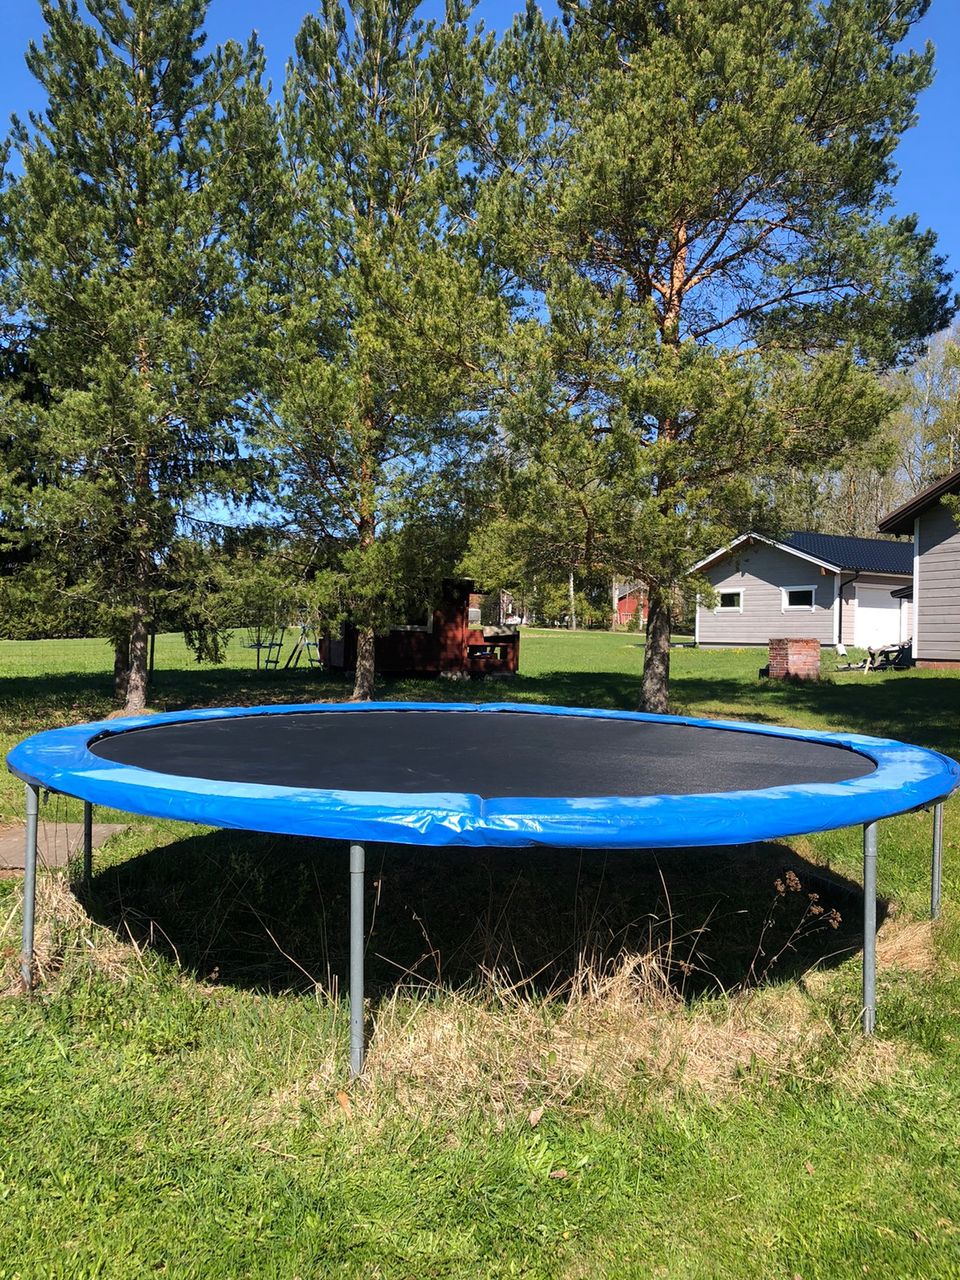 Myydään trampoliini (halkaisija; 4.2m)